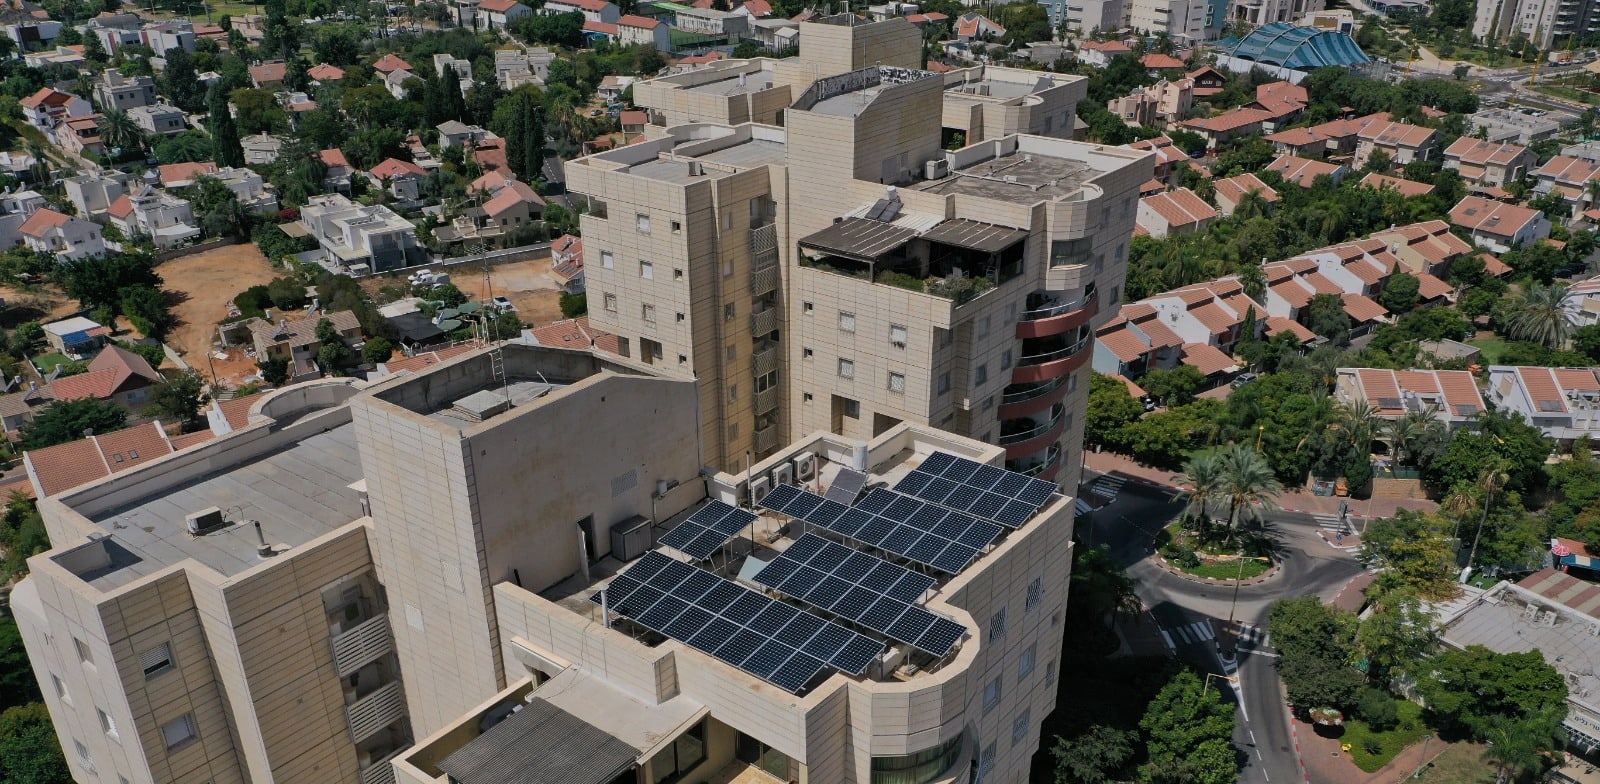 התקנת מערכת סולארית על גג בית משותף / צילום: וולטה סולאר